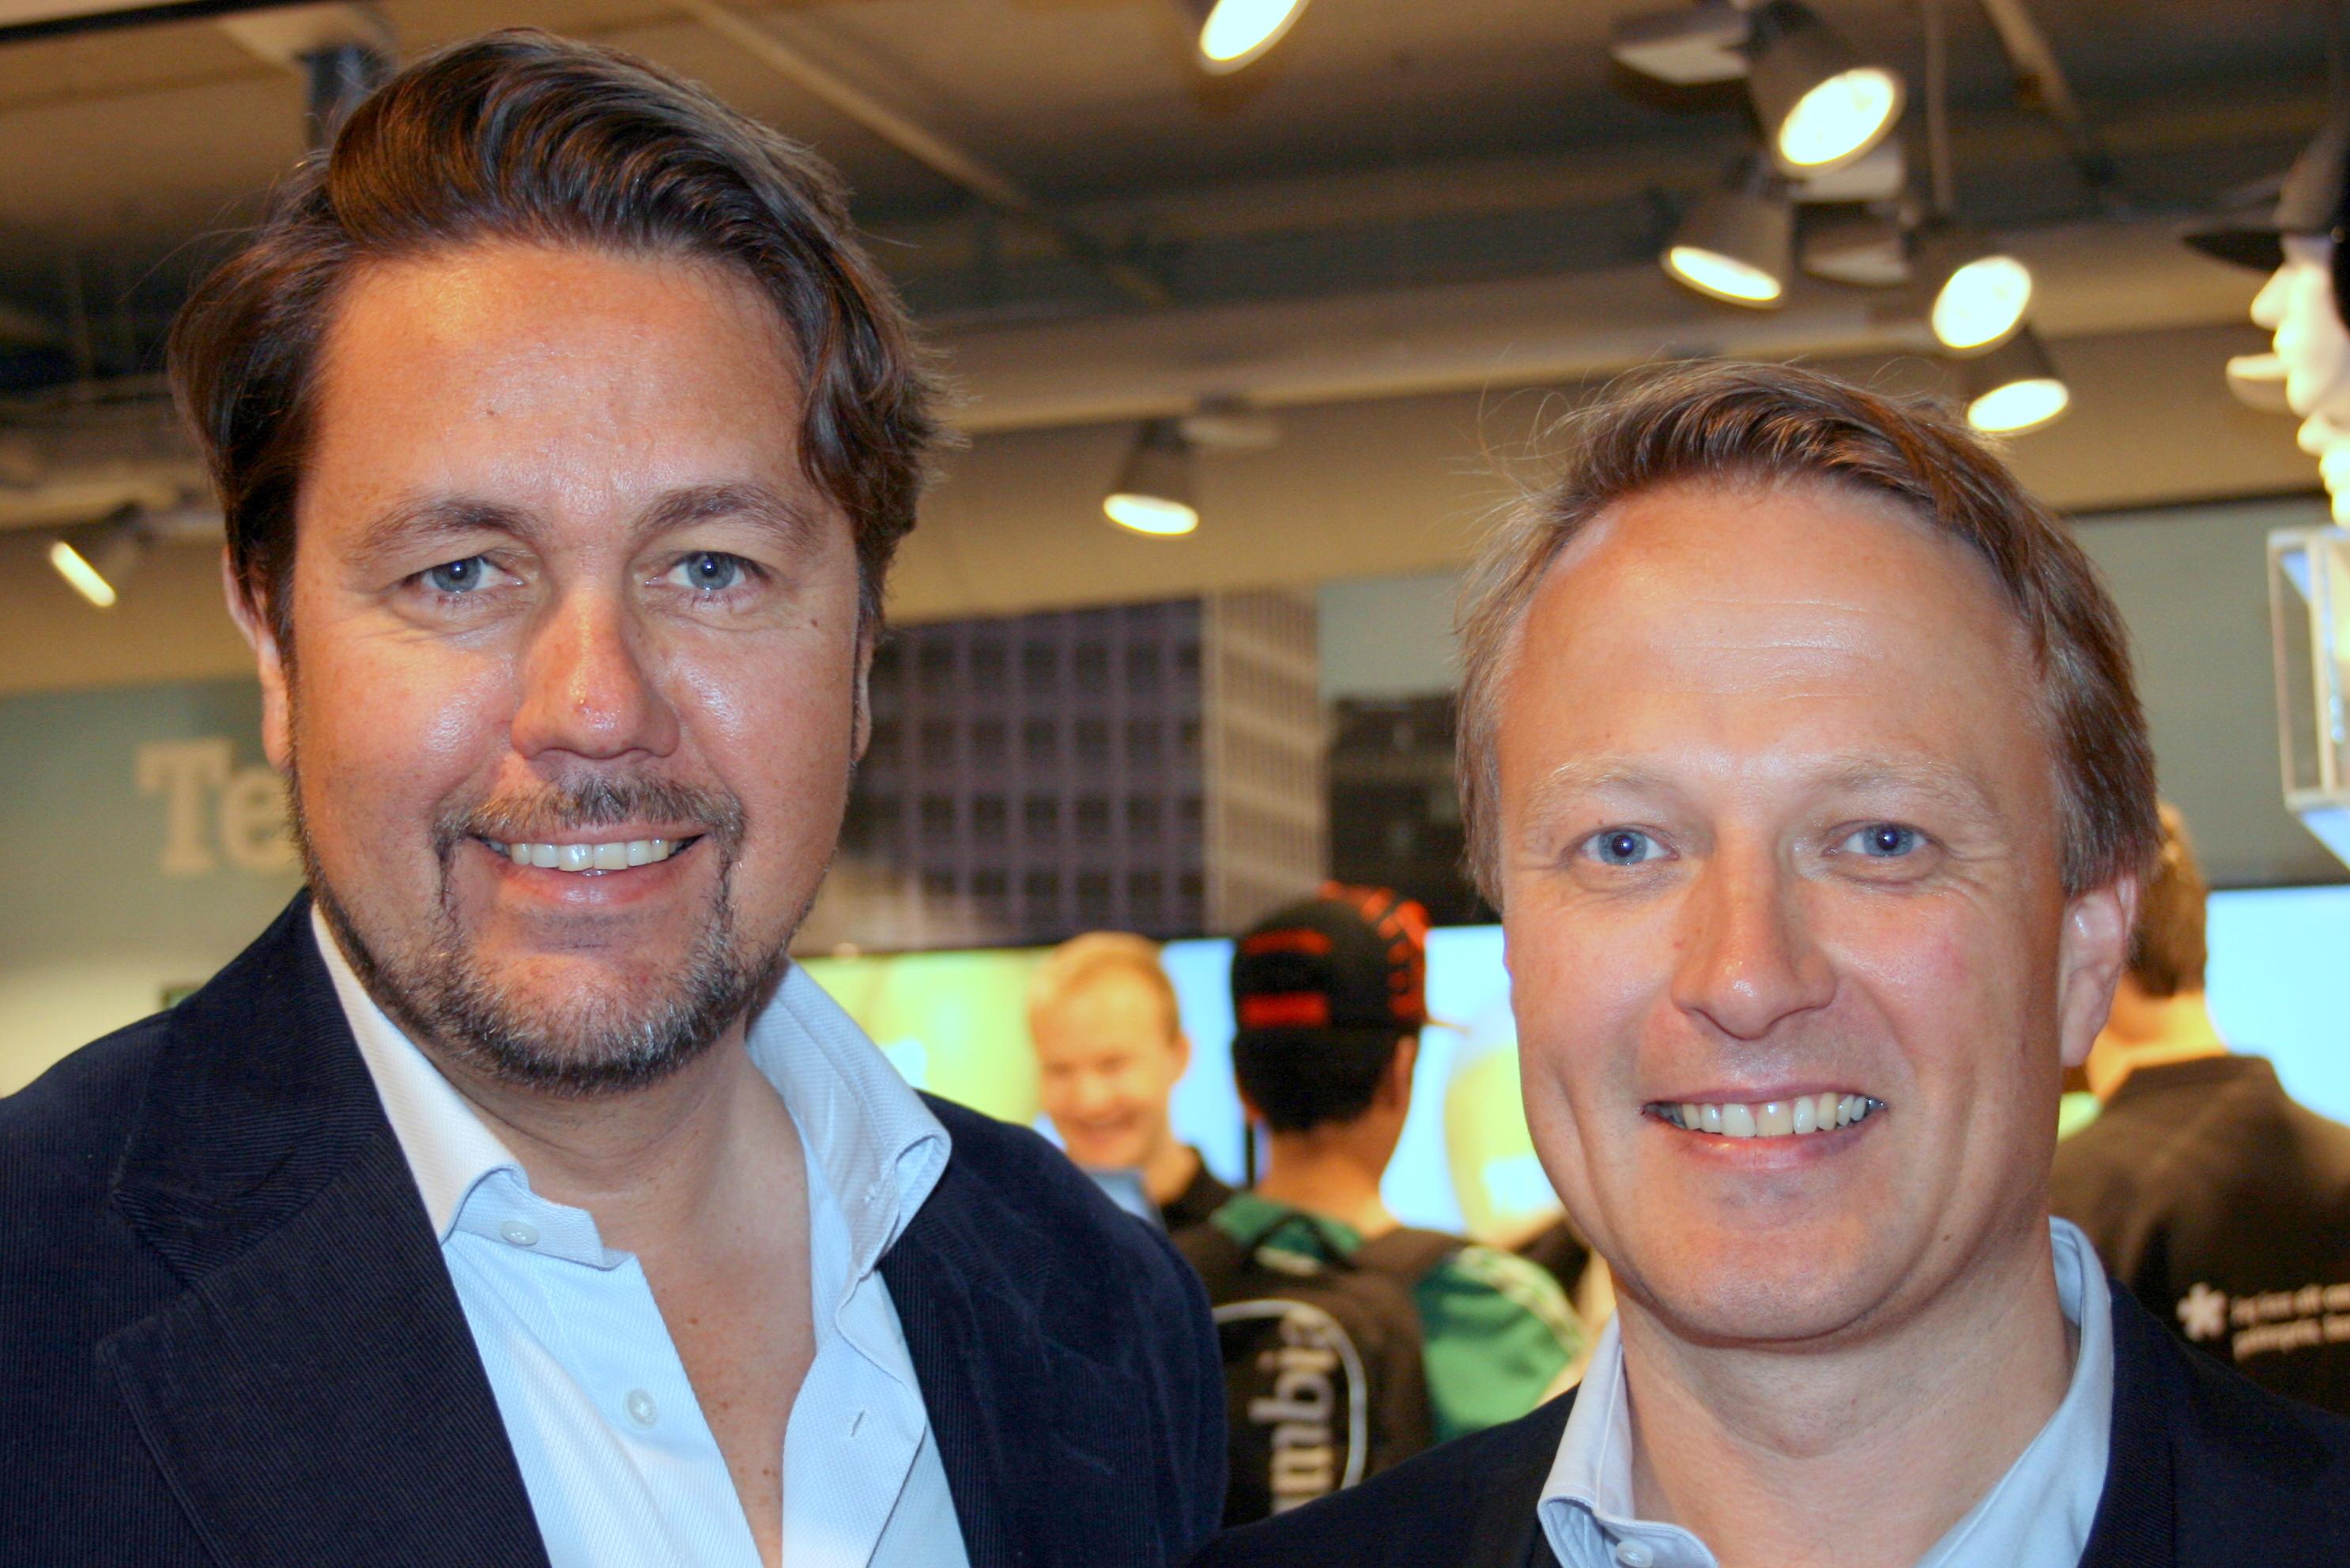 Tele2-sjef Arild Hustad og Tele2 Privat-sjef Jon Ivar Bjørtomt er fornøyde med responsen på åpingstilbudene.Foto: Mobilen.no